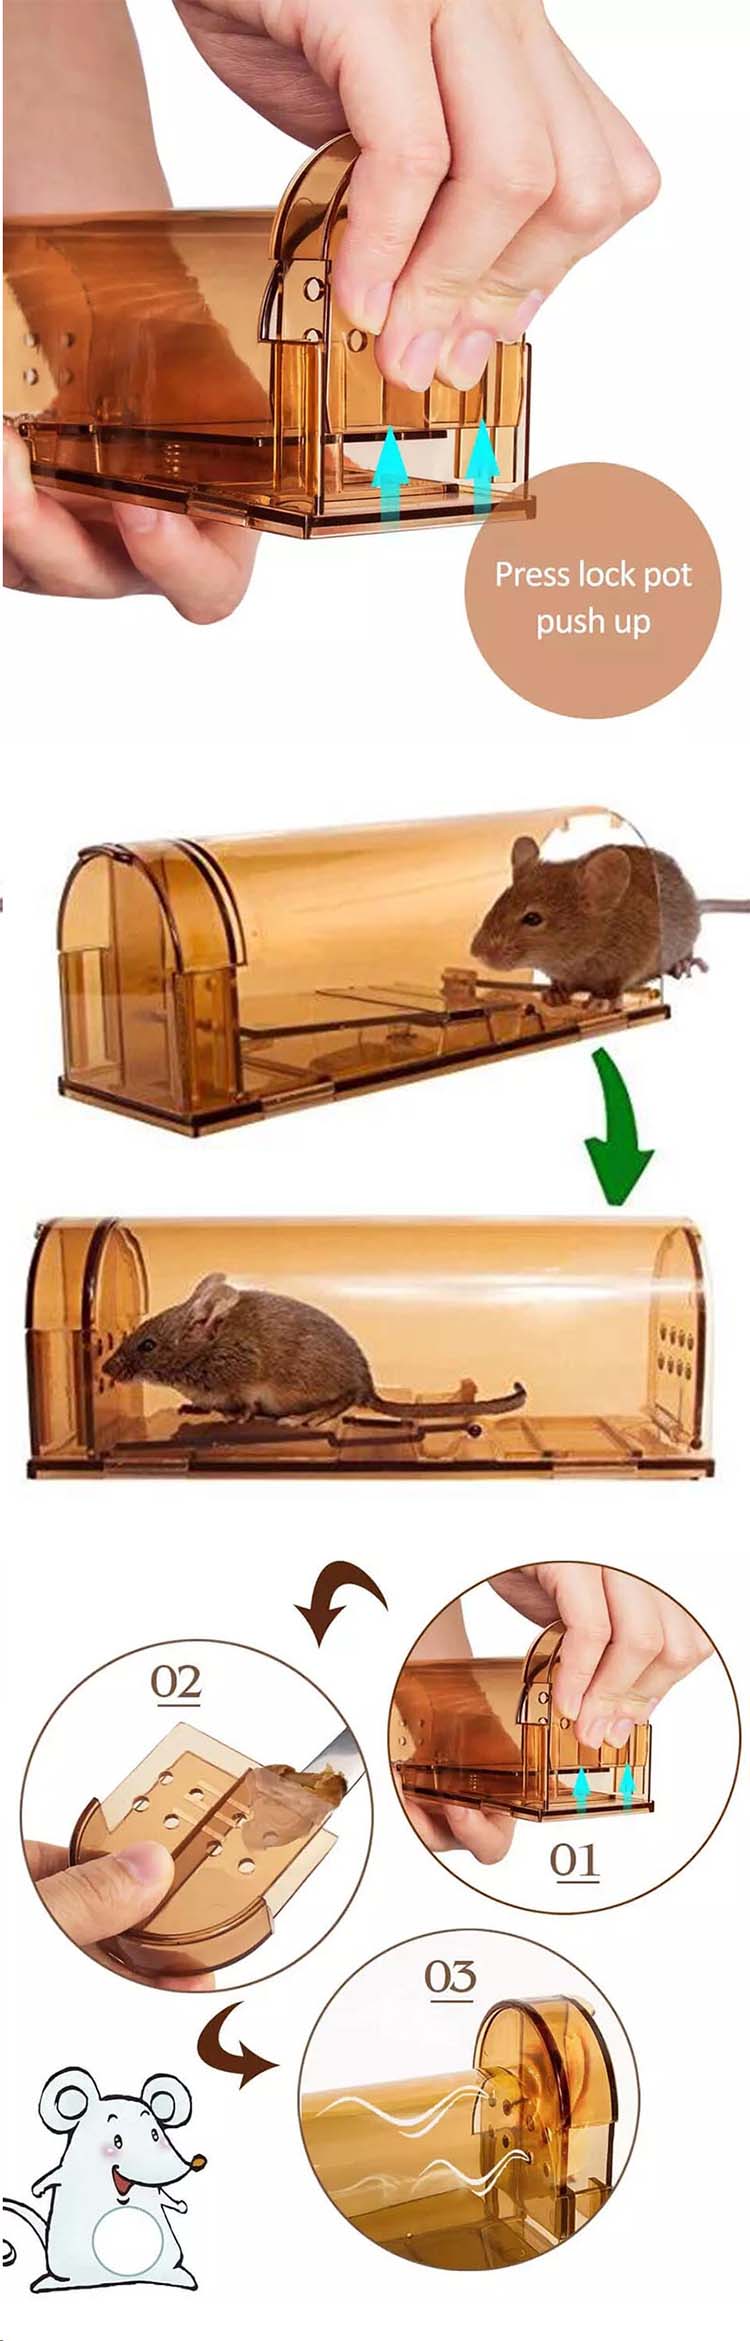 2019 אמזון מכירה חמה לפלסטיק ביתי אנושי תופס חי חכם עכבר מלכודת עכברושים כלוב מלכודת עכברים03